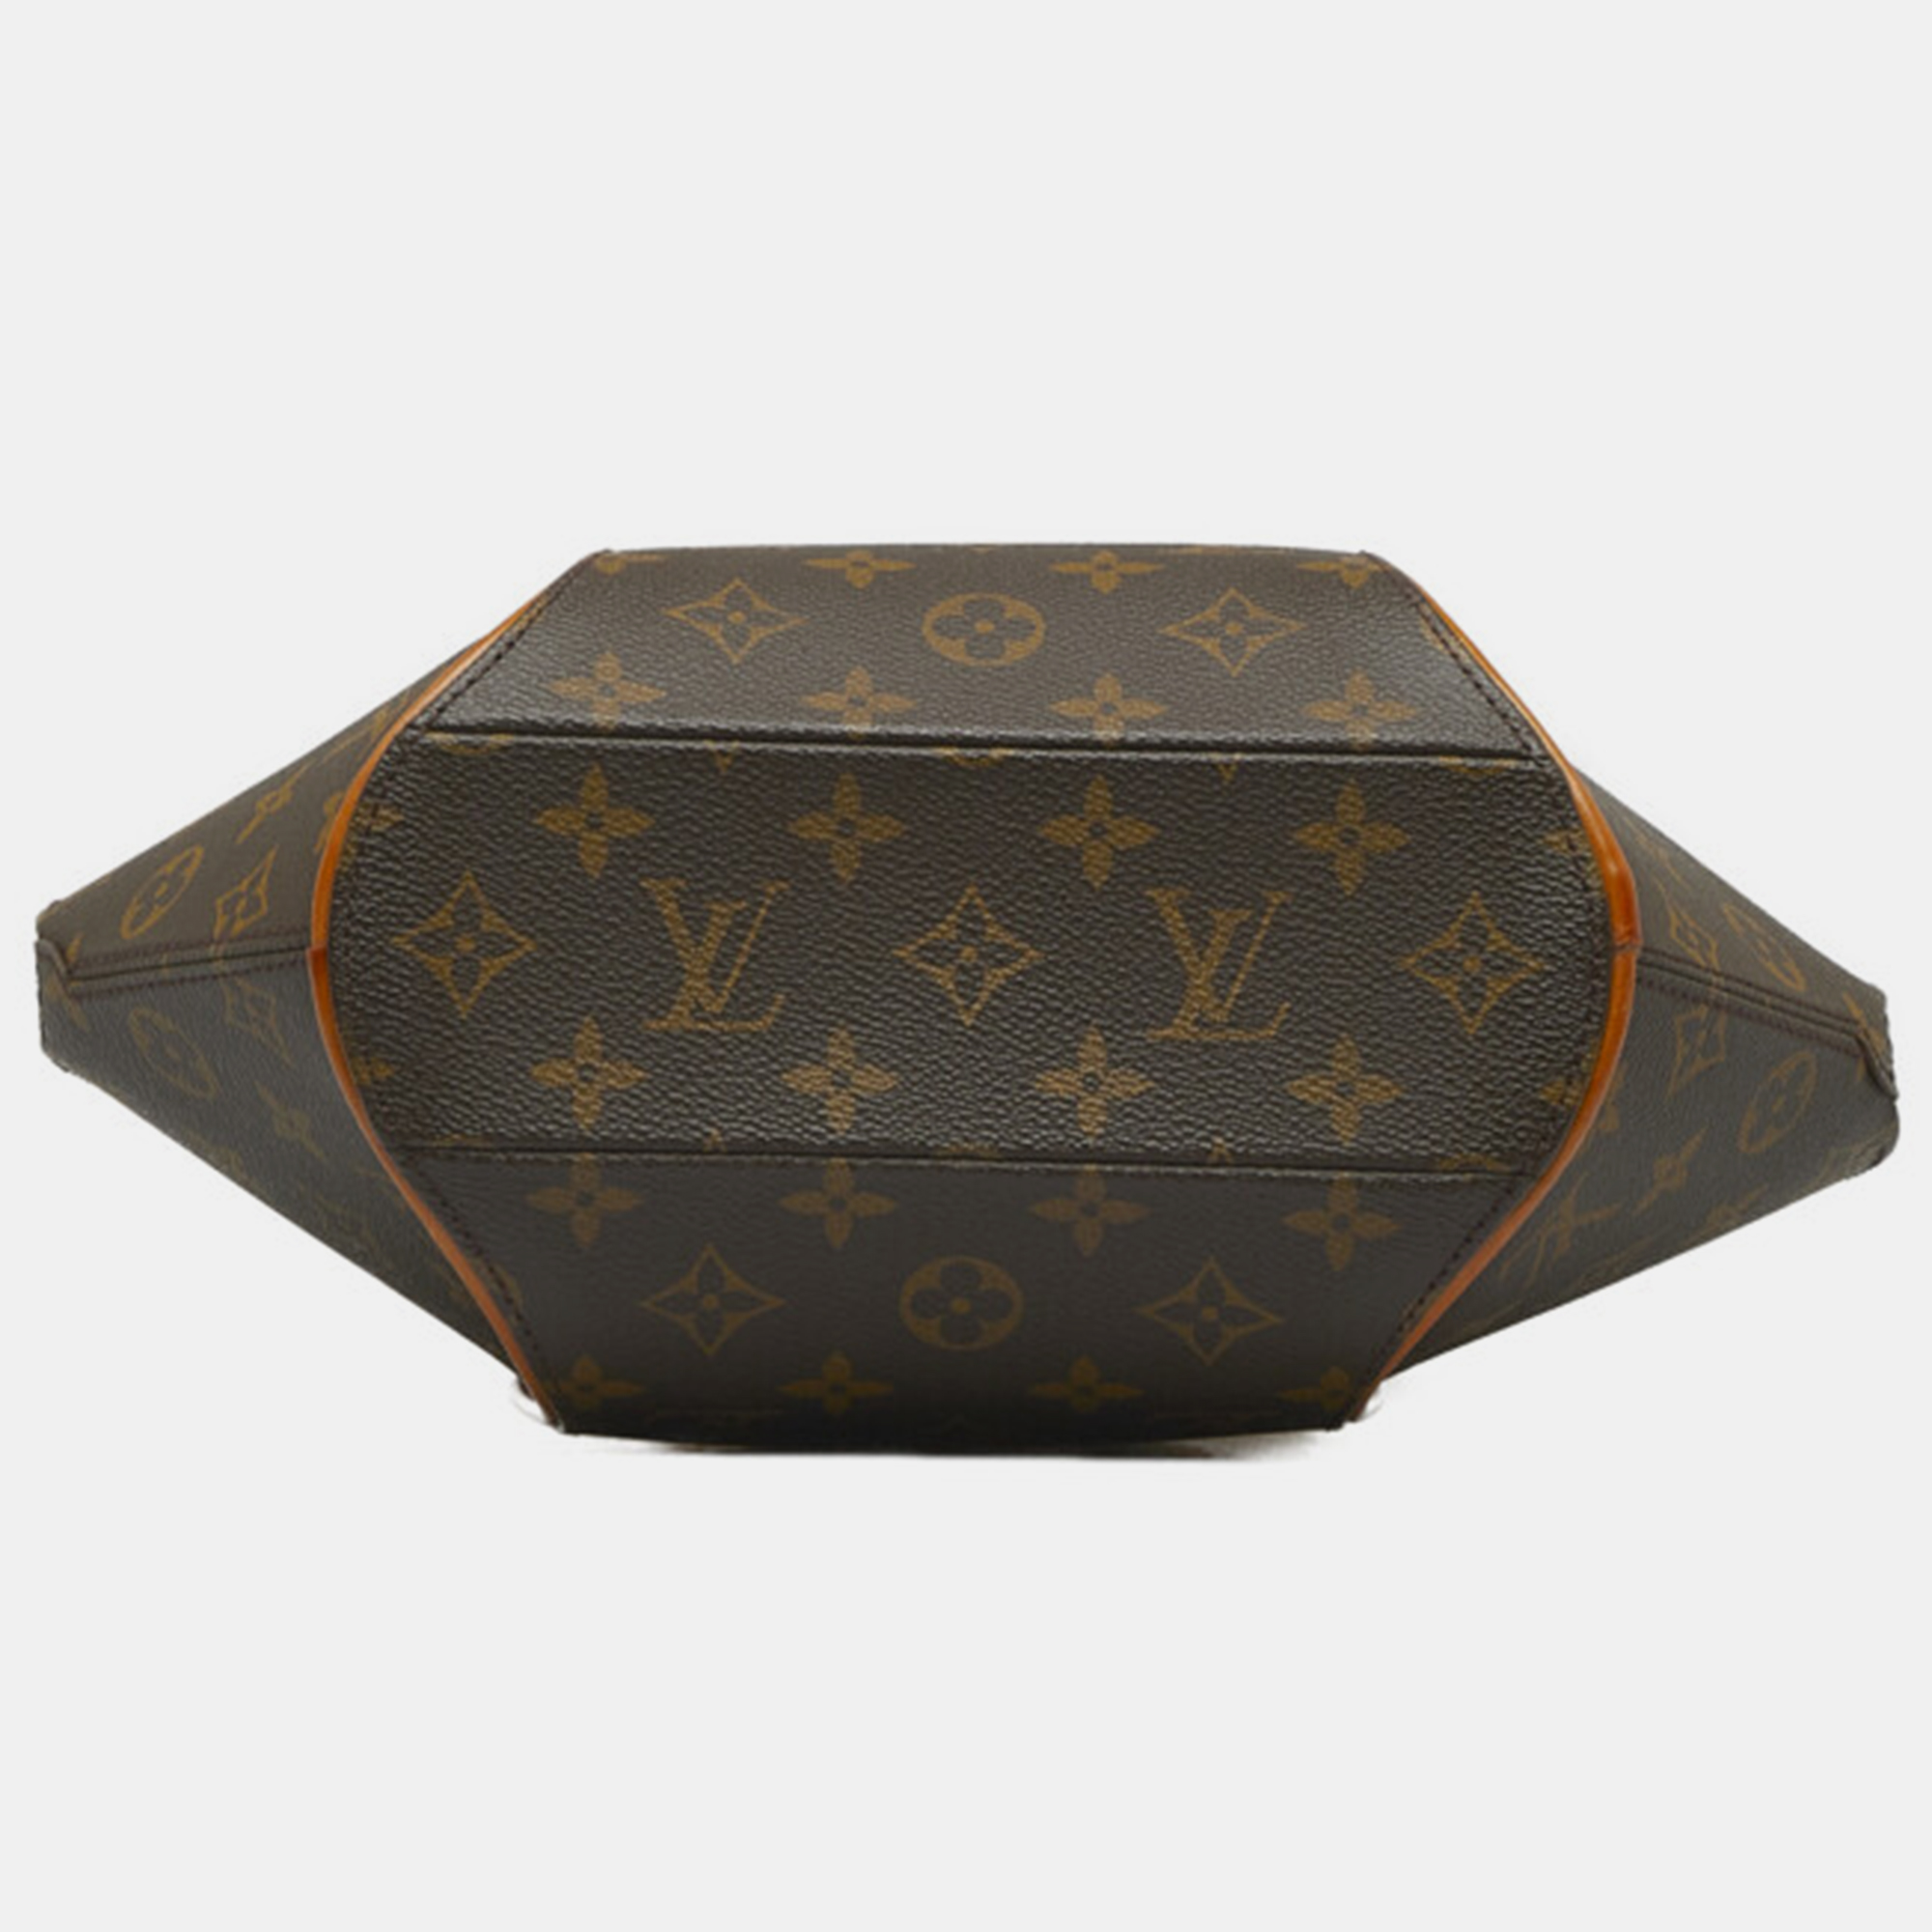 Louis Vuitton Brown Canvas Monogram Ellipse PM Bag